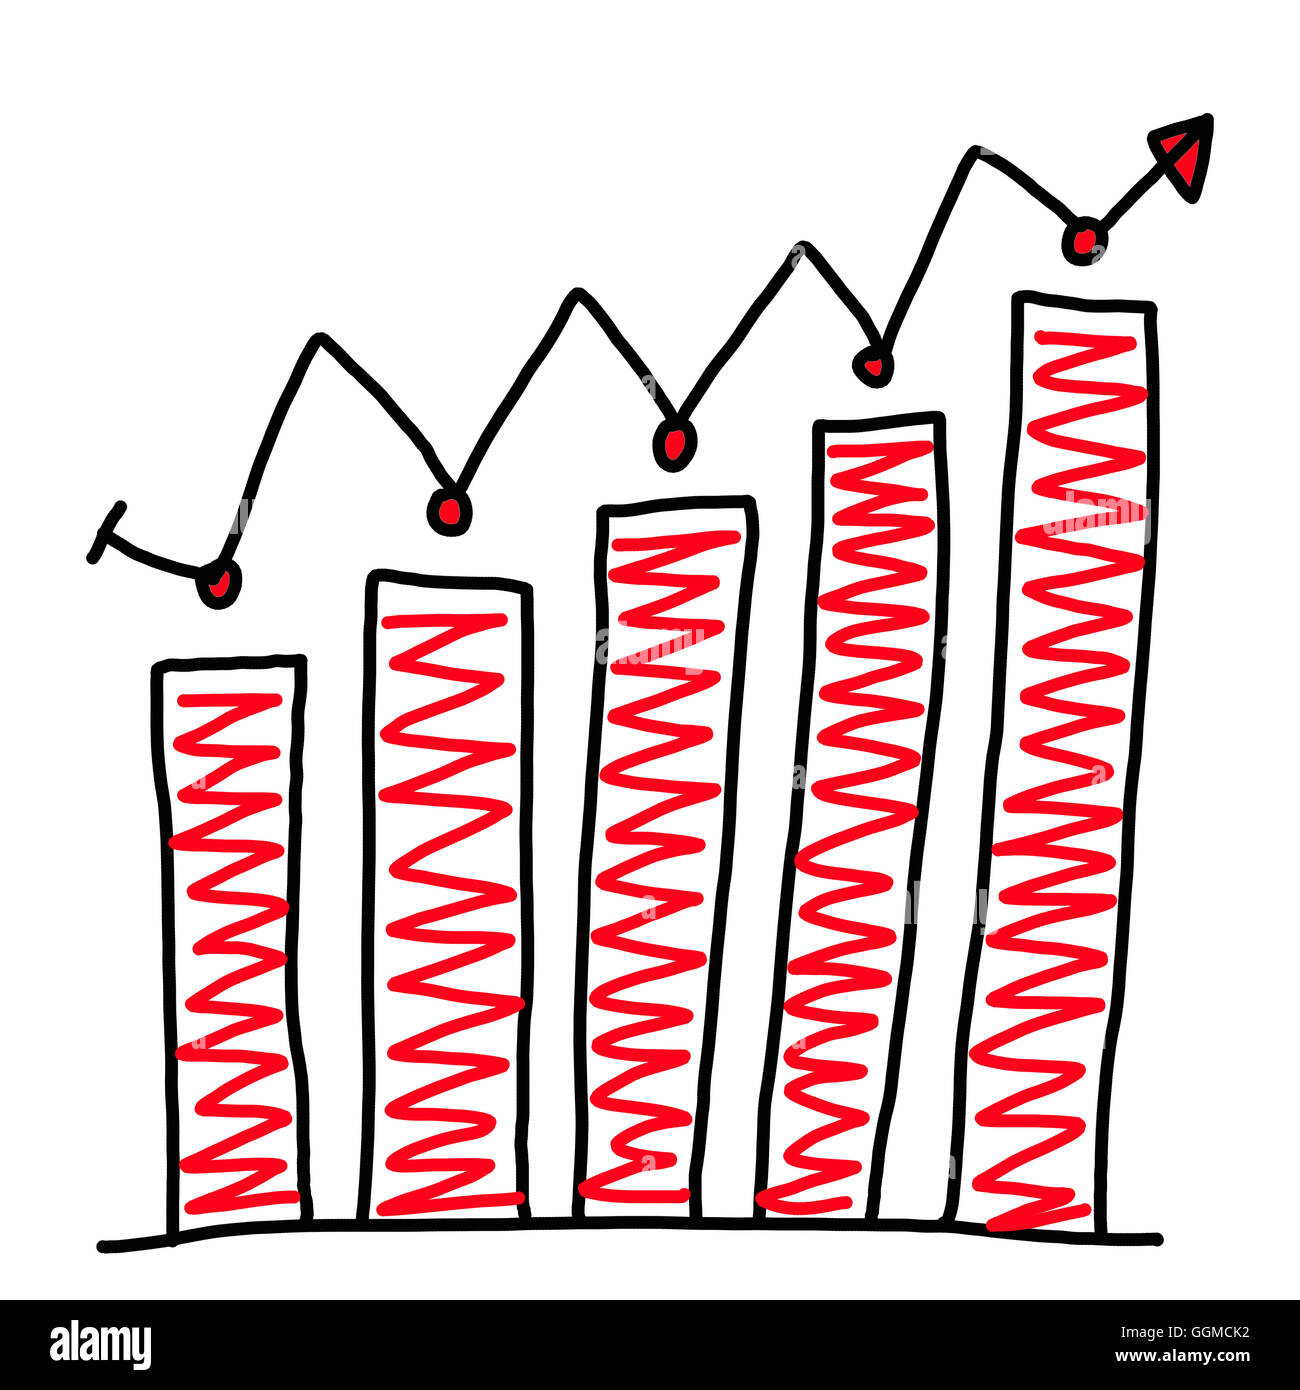 Handgezeichnete Grafiken Diagramm zum oberen Punkt wachsenden Daten zum Konzept des Gewinns im Unternehmen auf weißem Hintergrund. Stockfoto